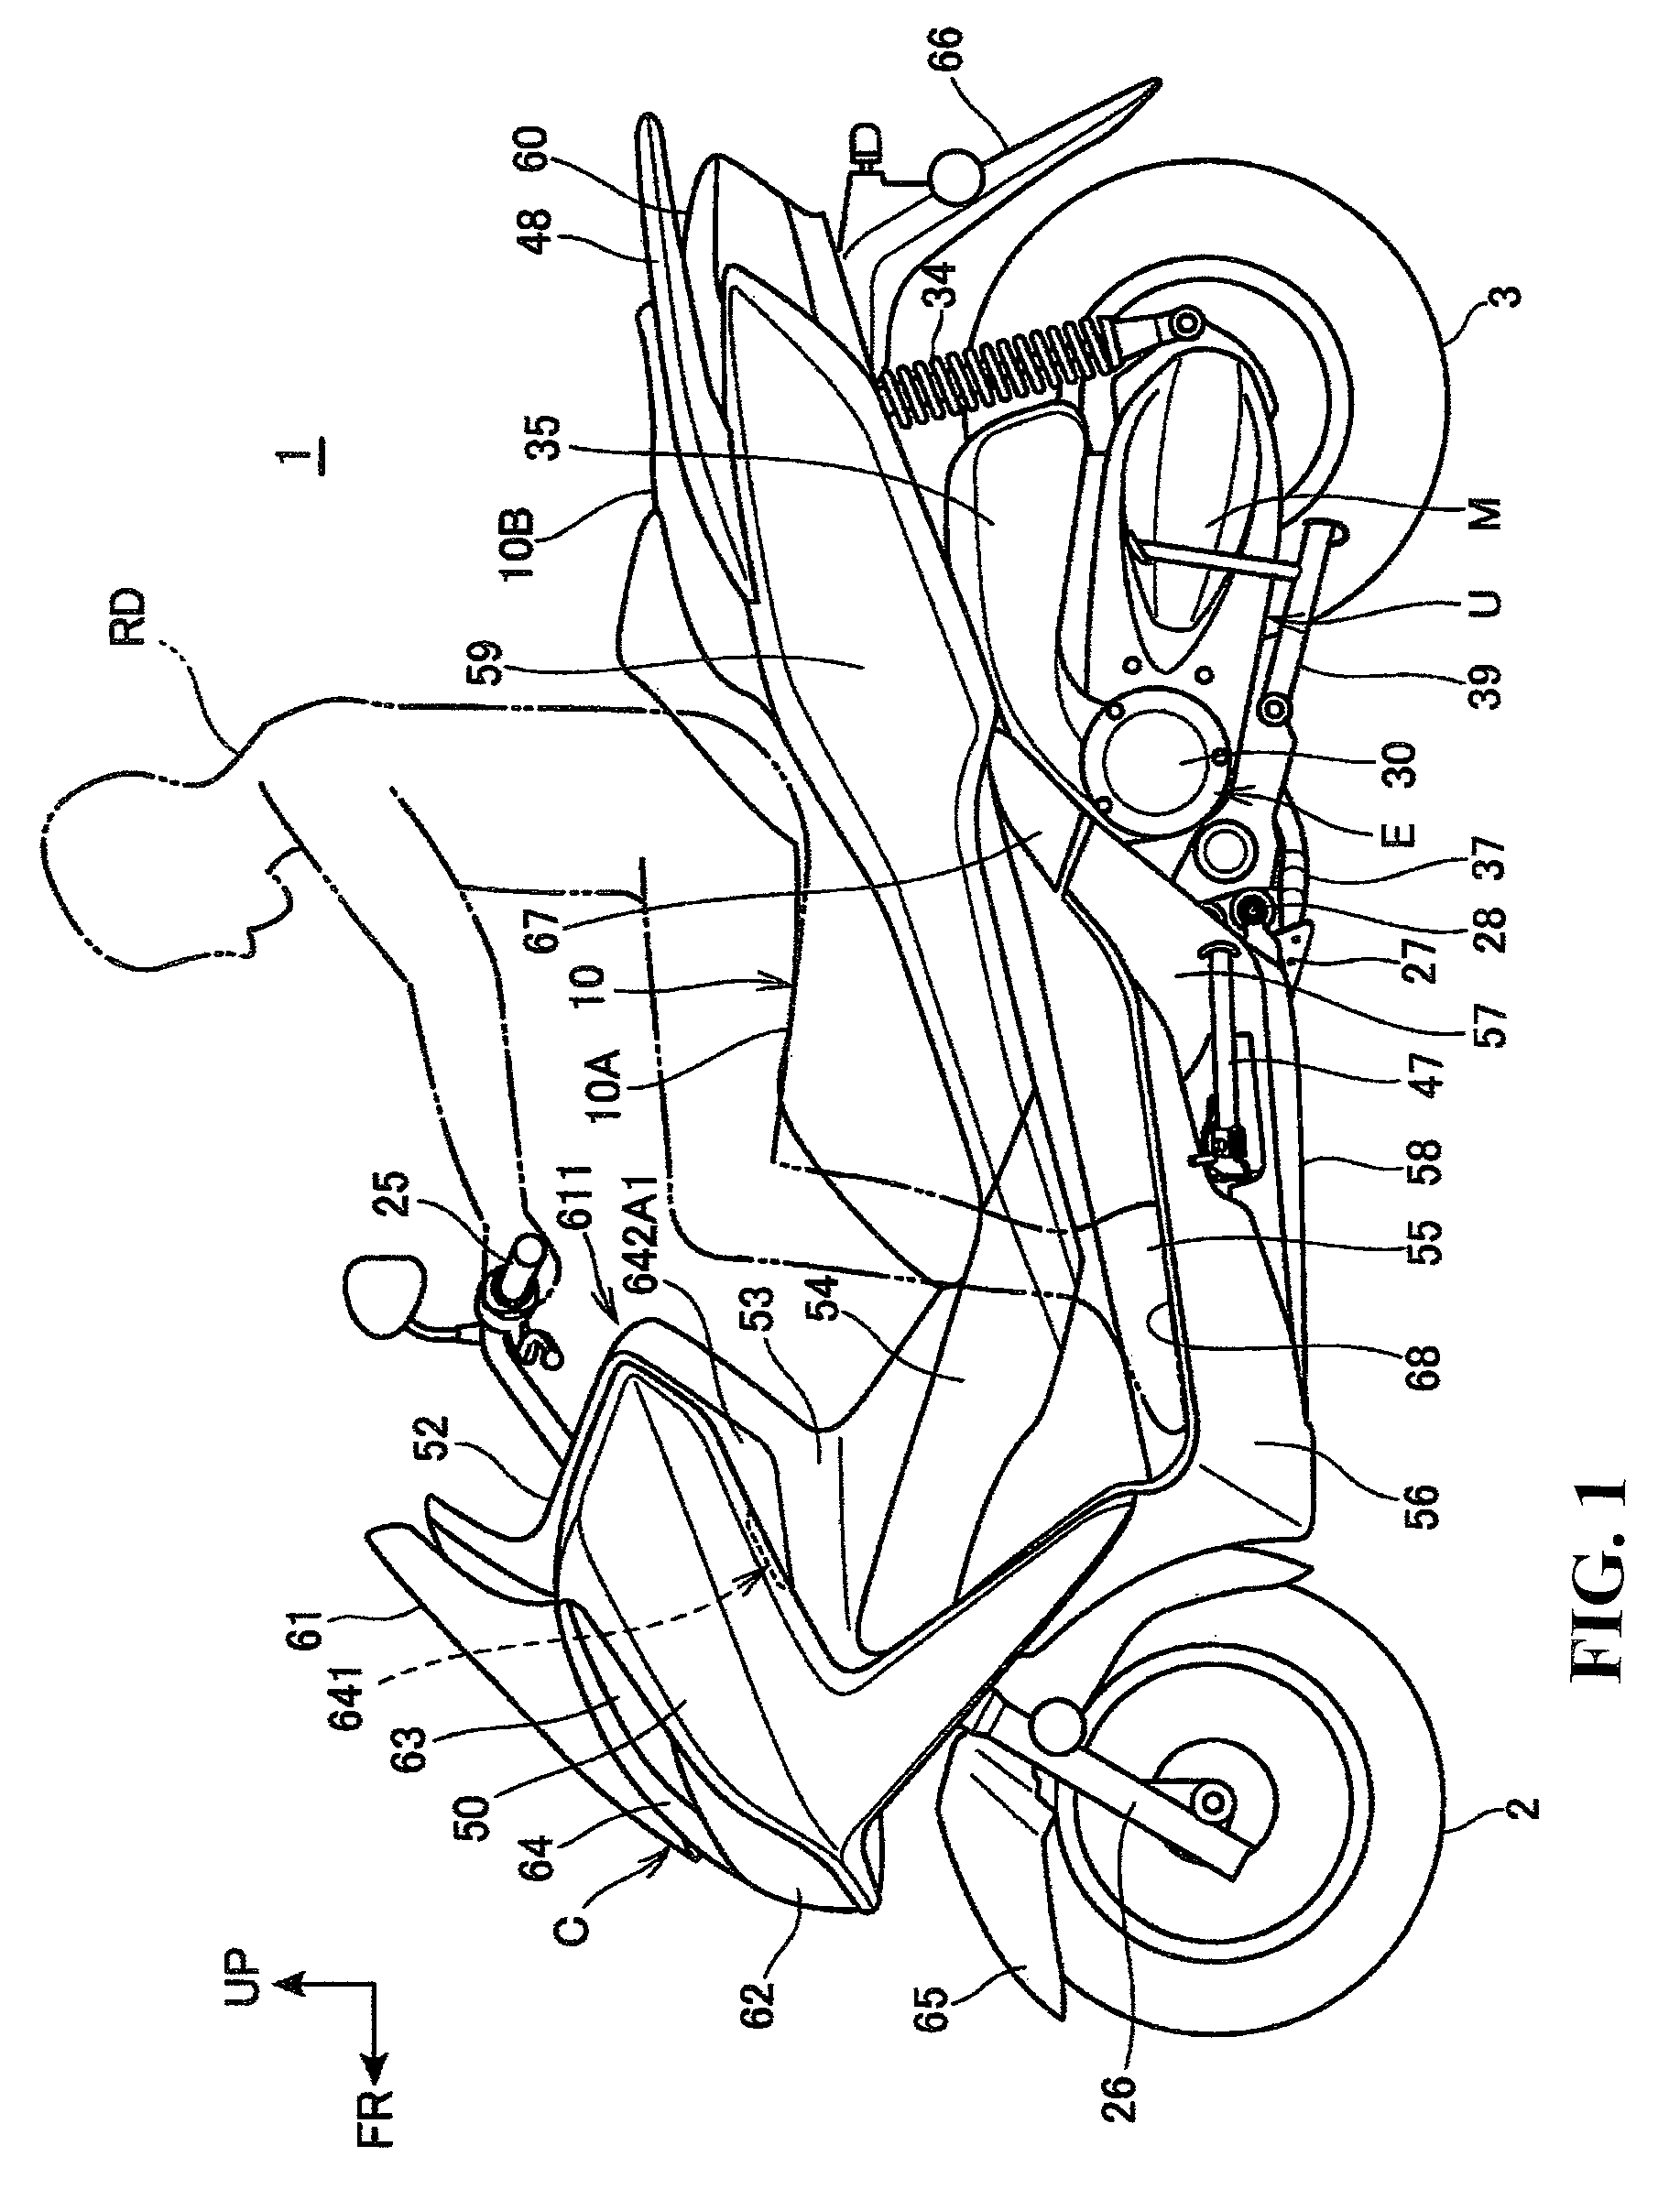 Windbreak structure for saddle type vehicle